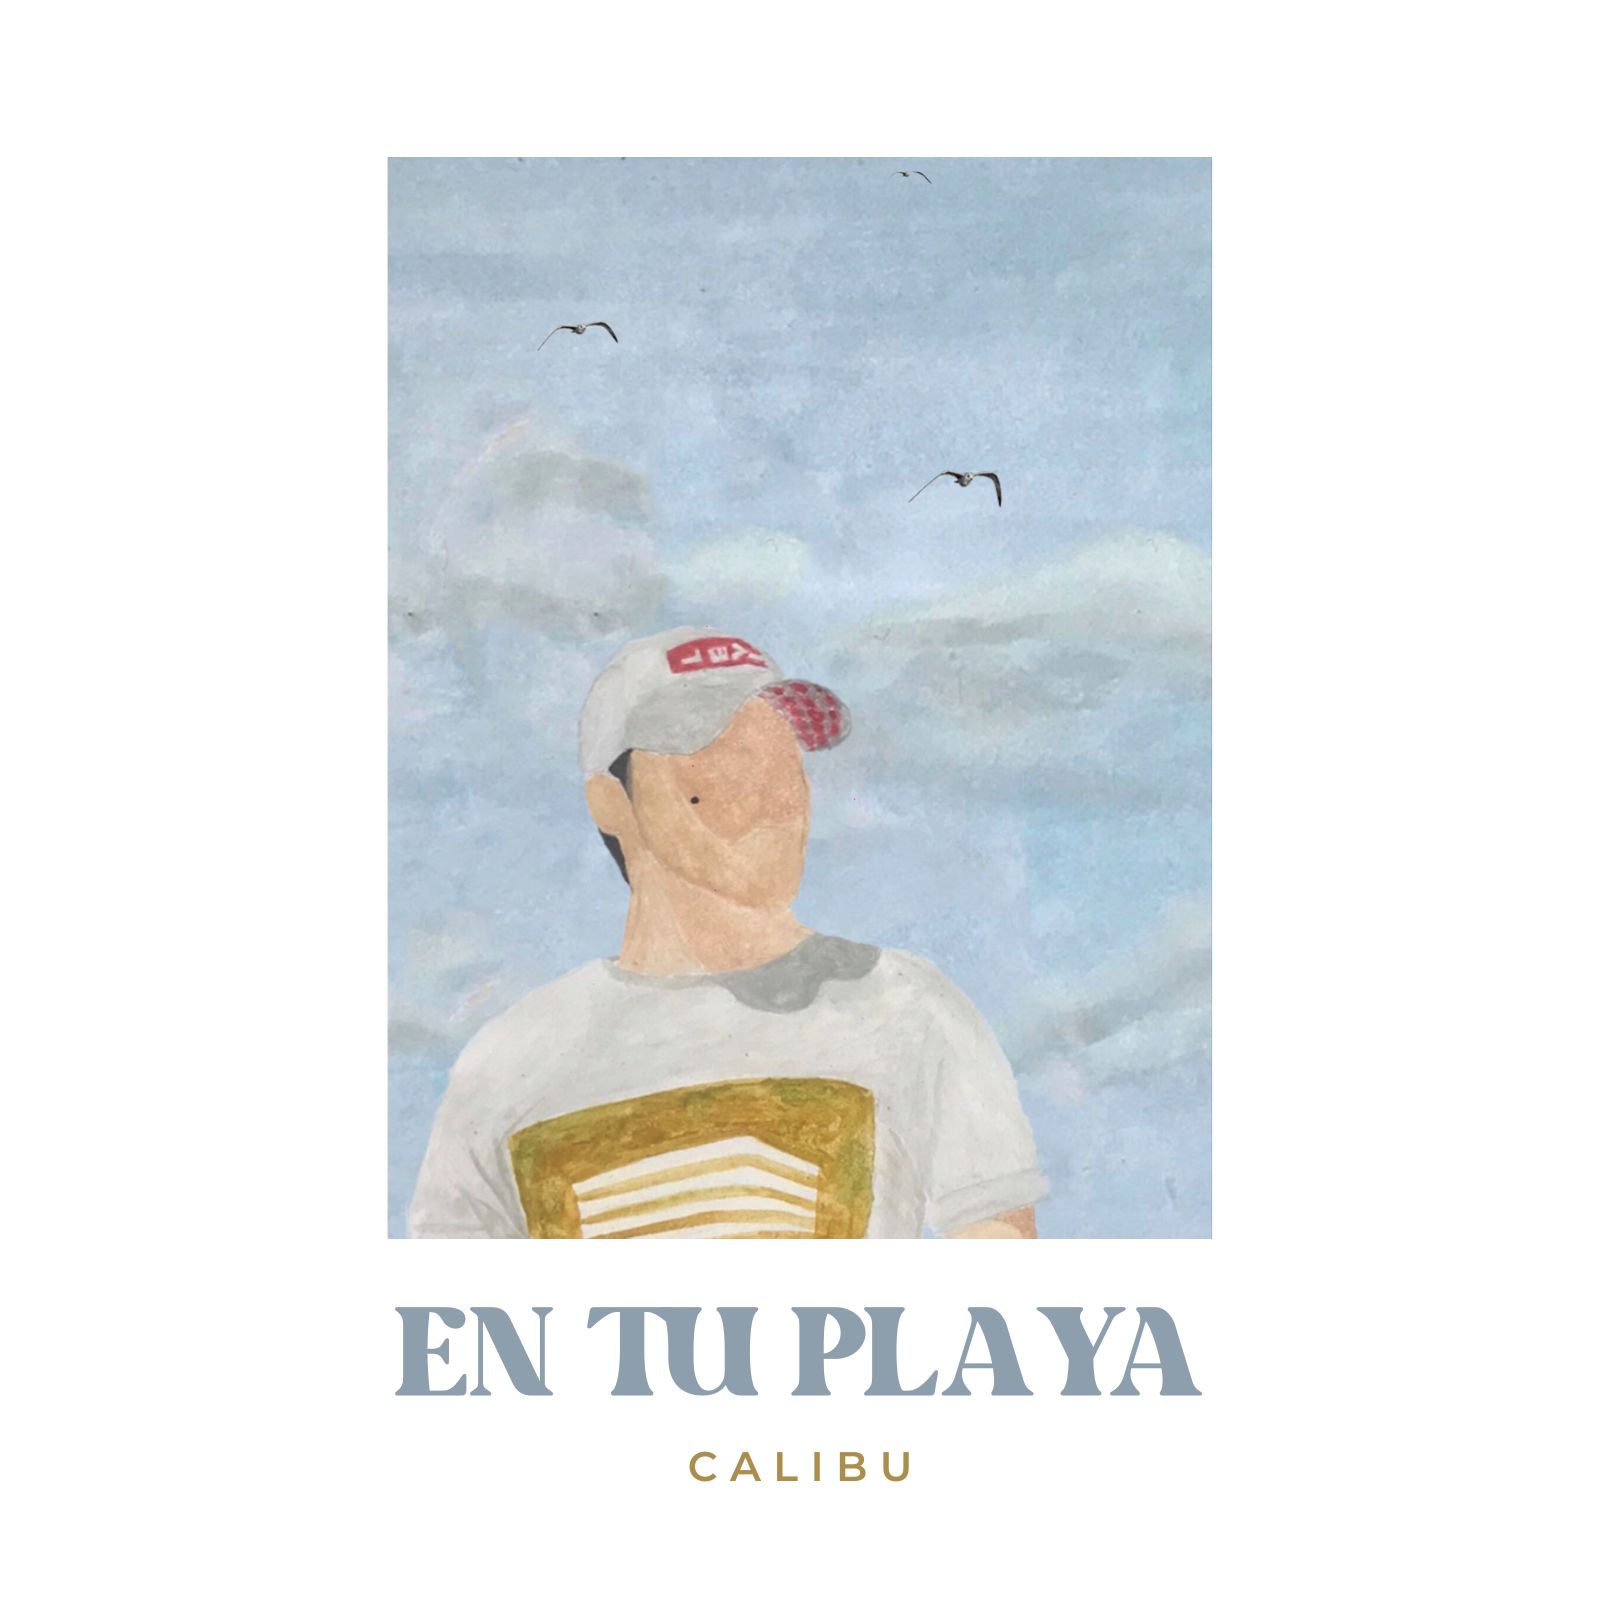 De Loja para el mundo: Calibu lanza su primer sencillo ´En Tu Playa´